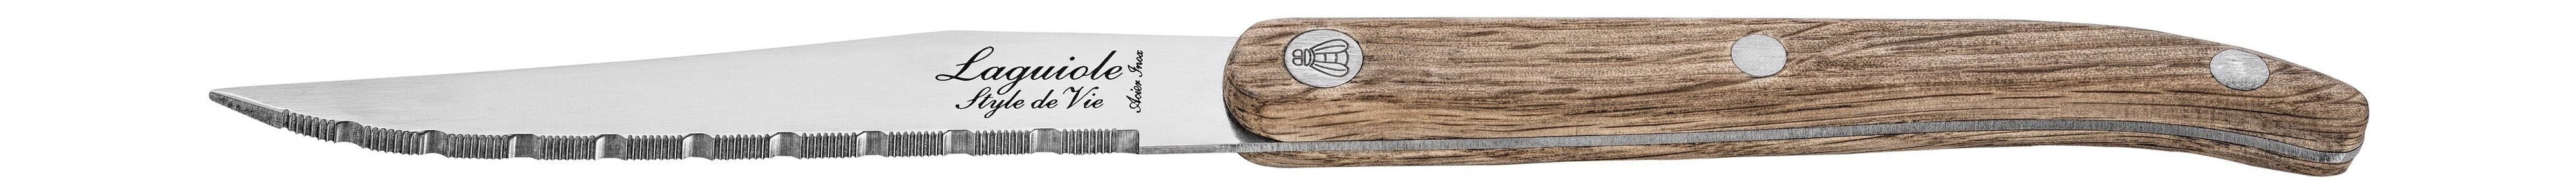 Style De Vie Authentique Laguiole Innovation Line Steak Knives 6 Piece Set Oak Wood, Servurderet Blade